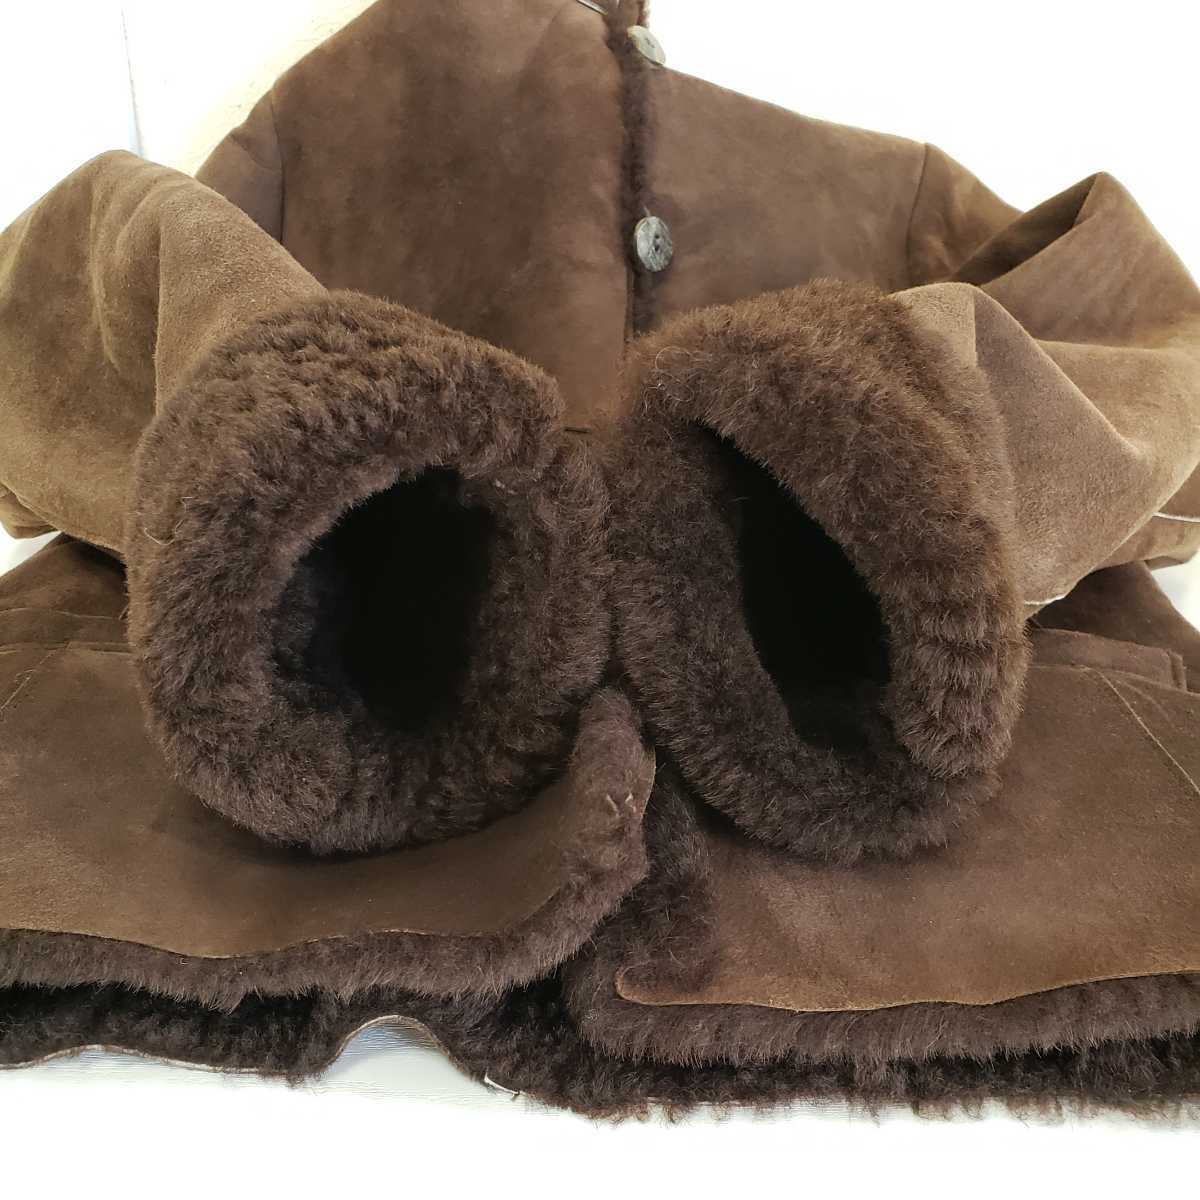  beautiful goods *Owen Barryo- Enba Lee sheepskin with a hood mouton jacket England made lady's (36) Brown tea color 